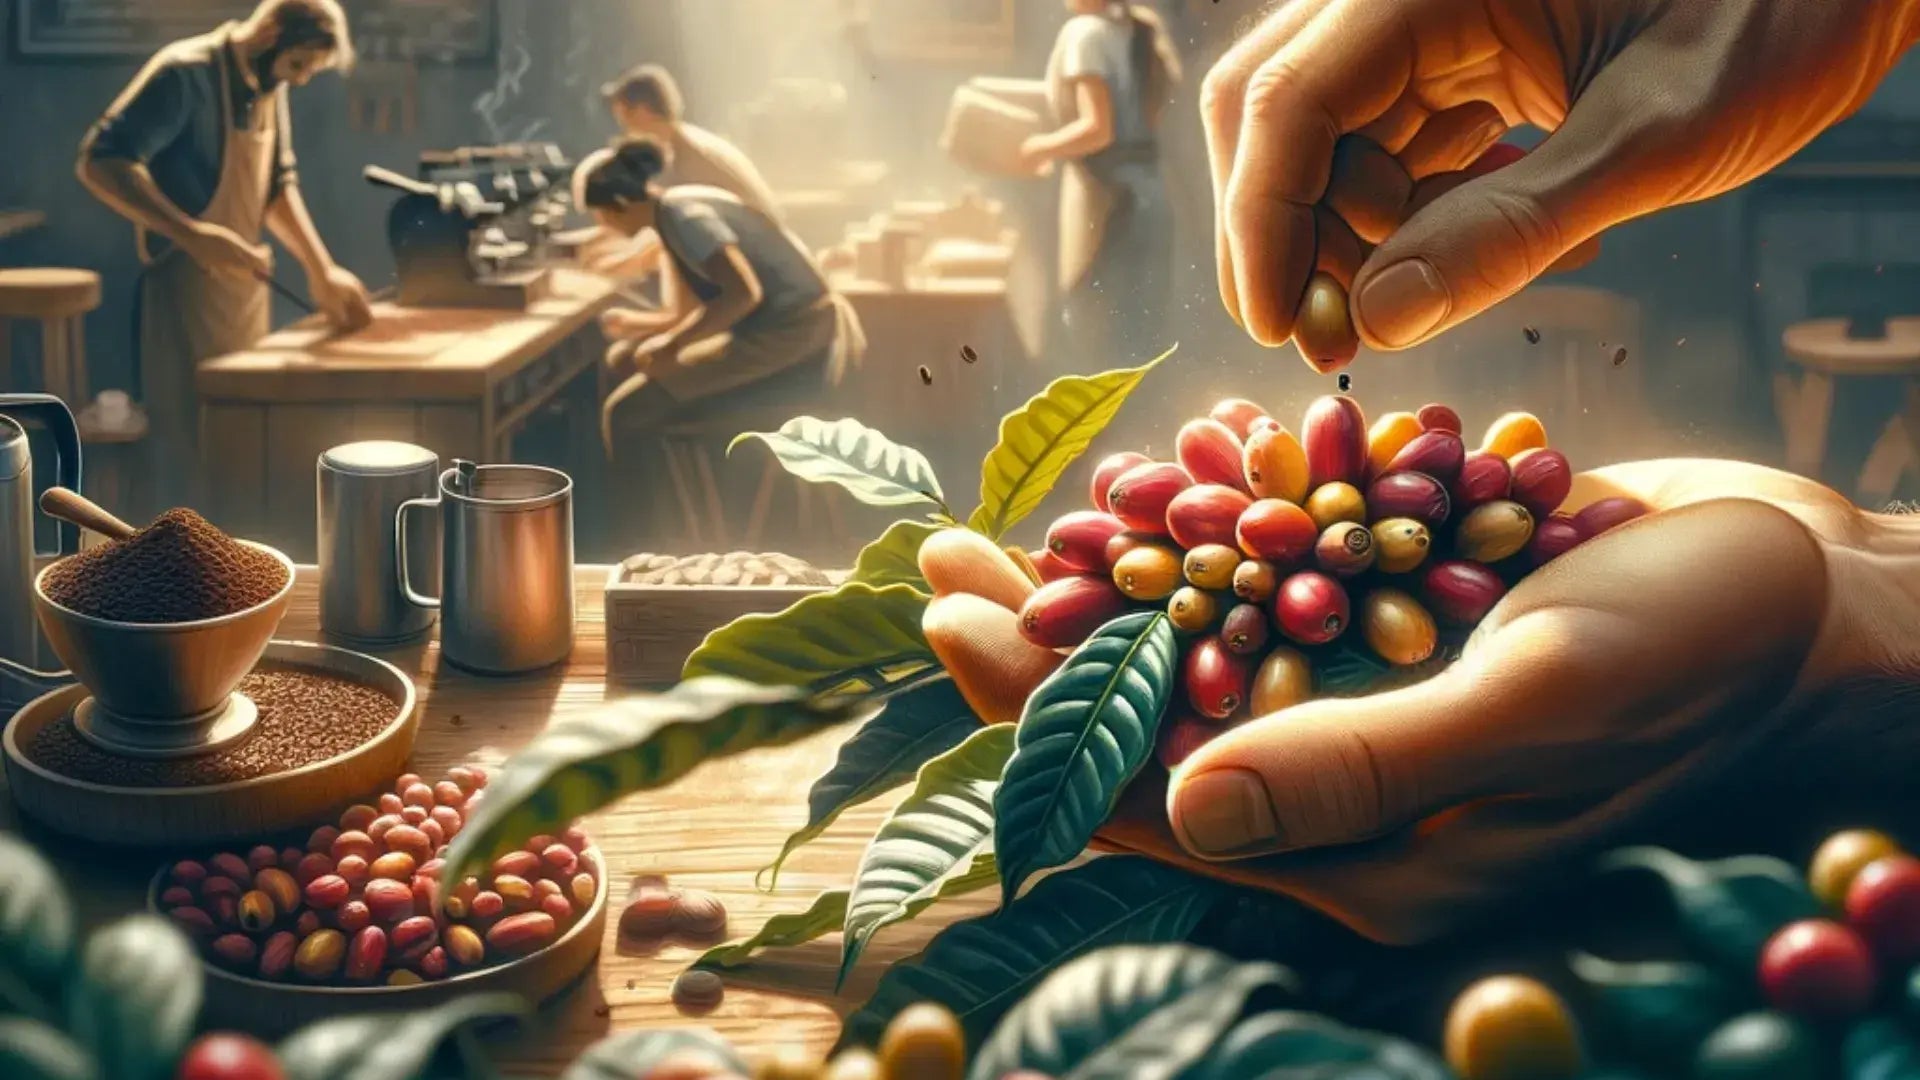 Mãos selecionando cerejas de café maduras com uma cena de torrefação ao fundo, destacando a artesania do café.